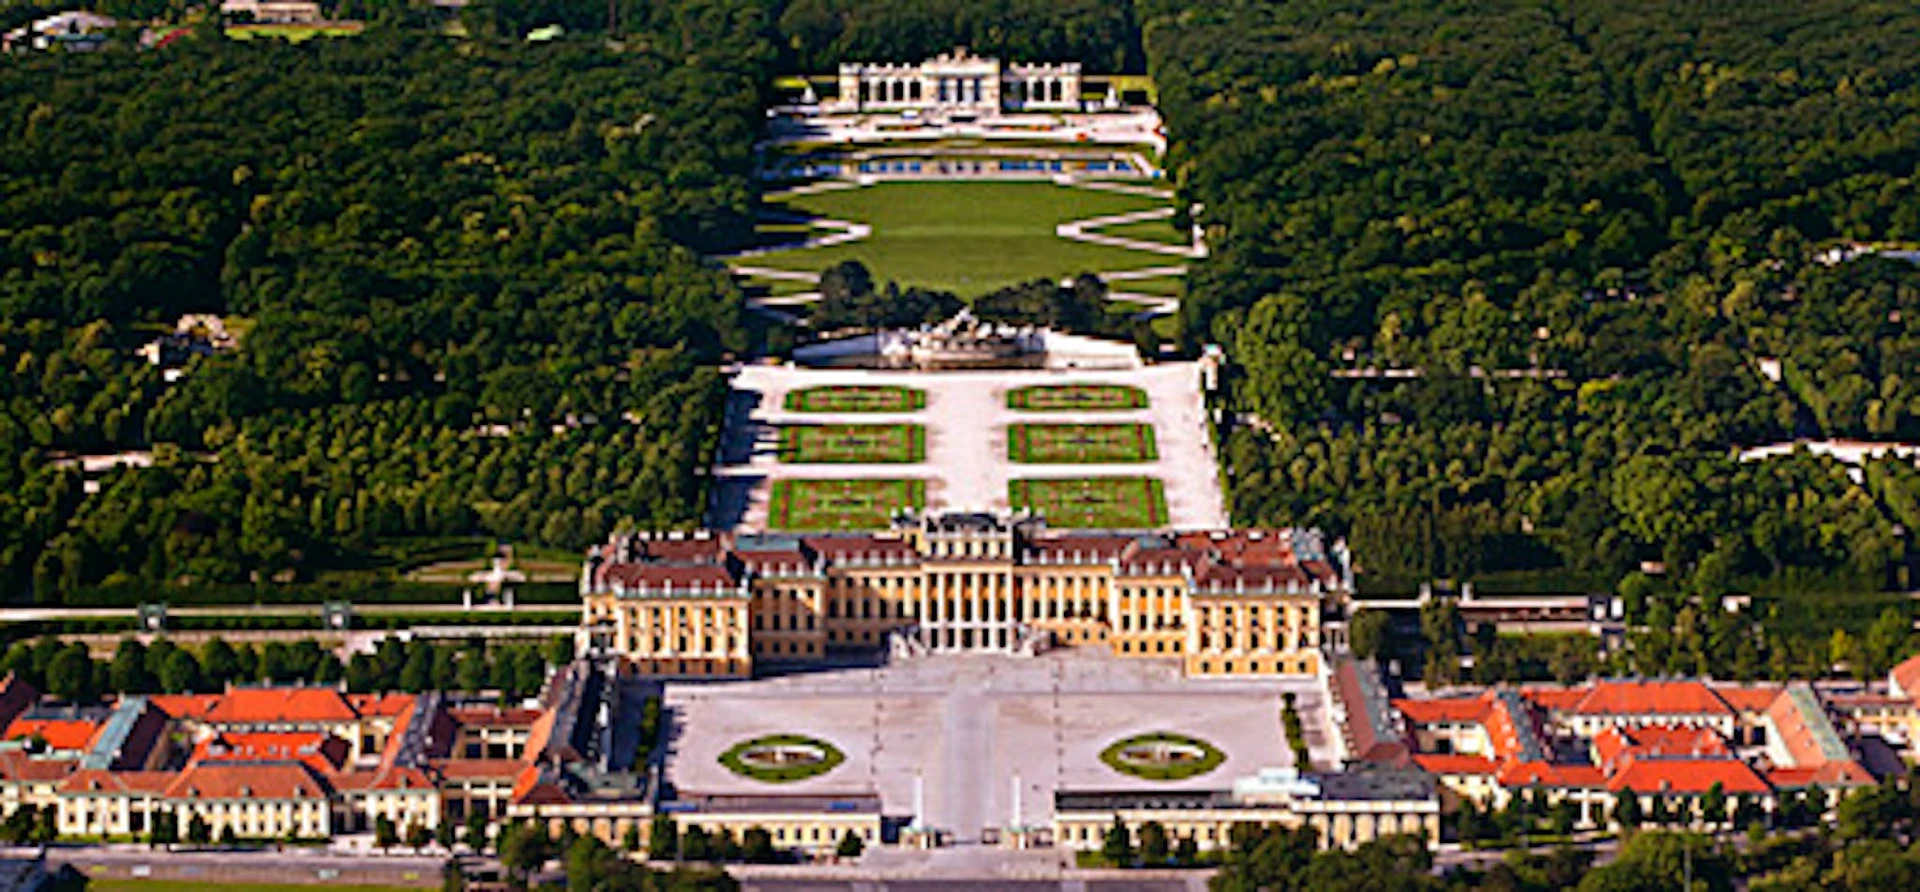 Logement situé dans le centre de Vienne